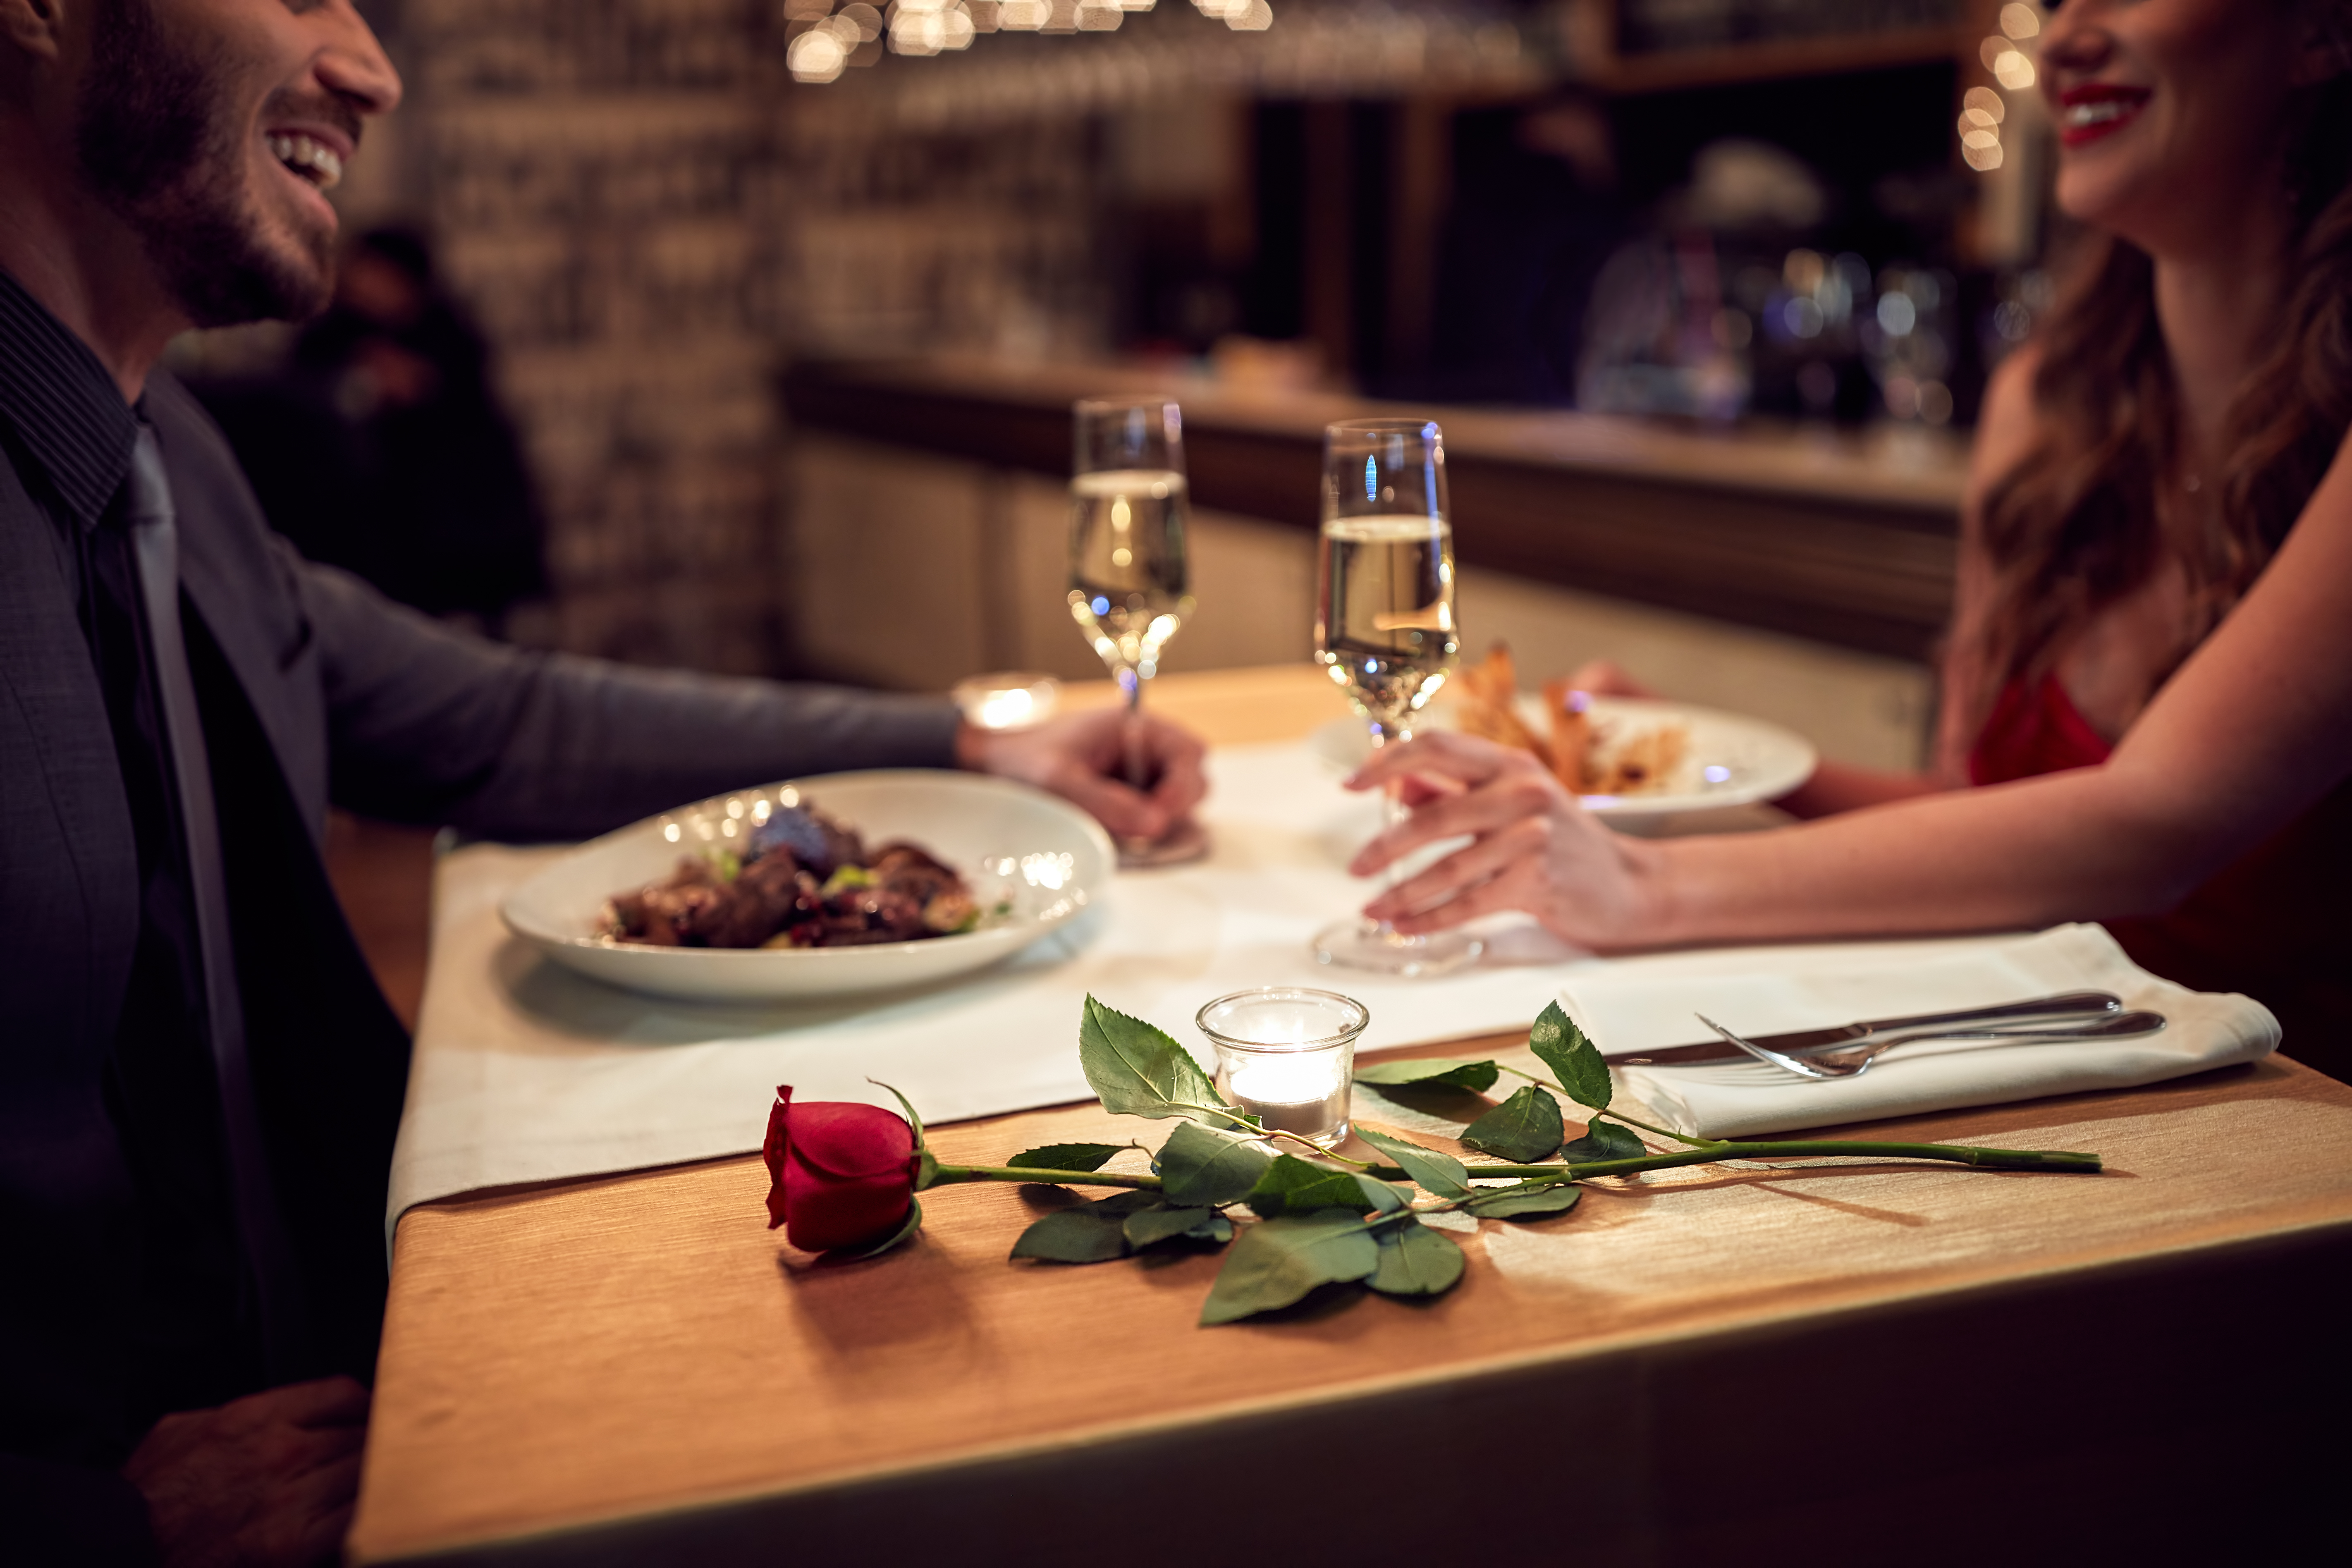 A couple enjoying a romantic dinner | Source: Shutterstock